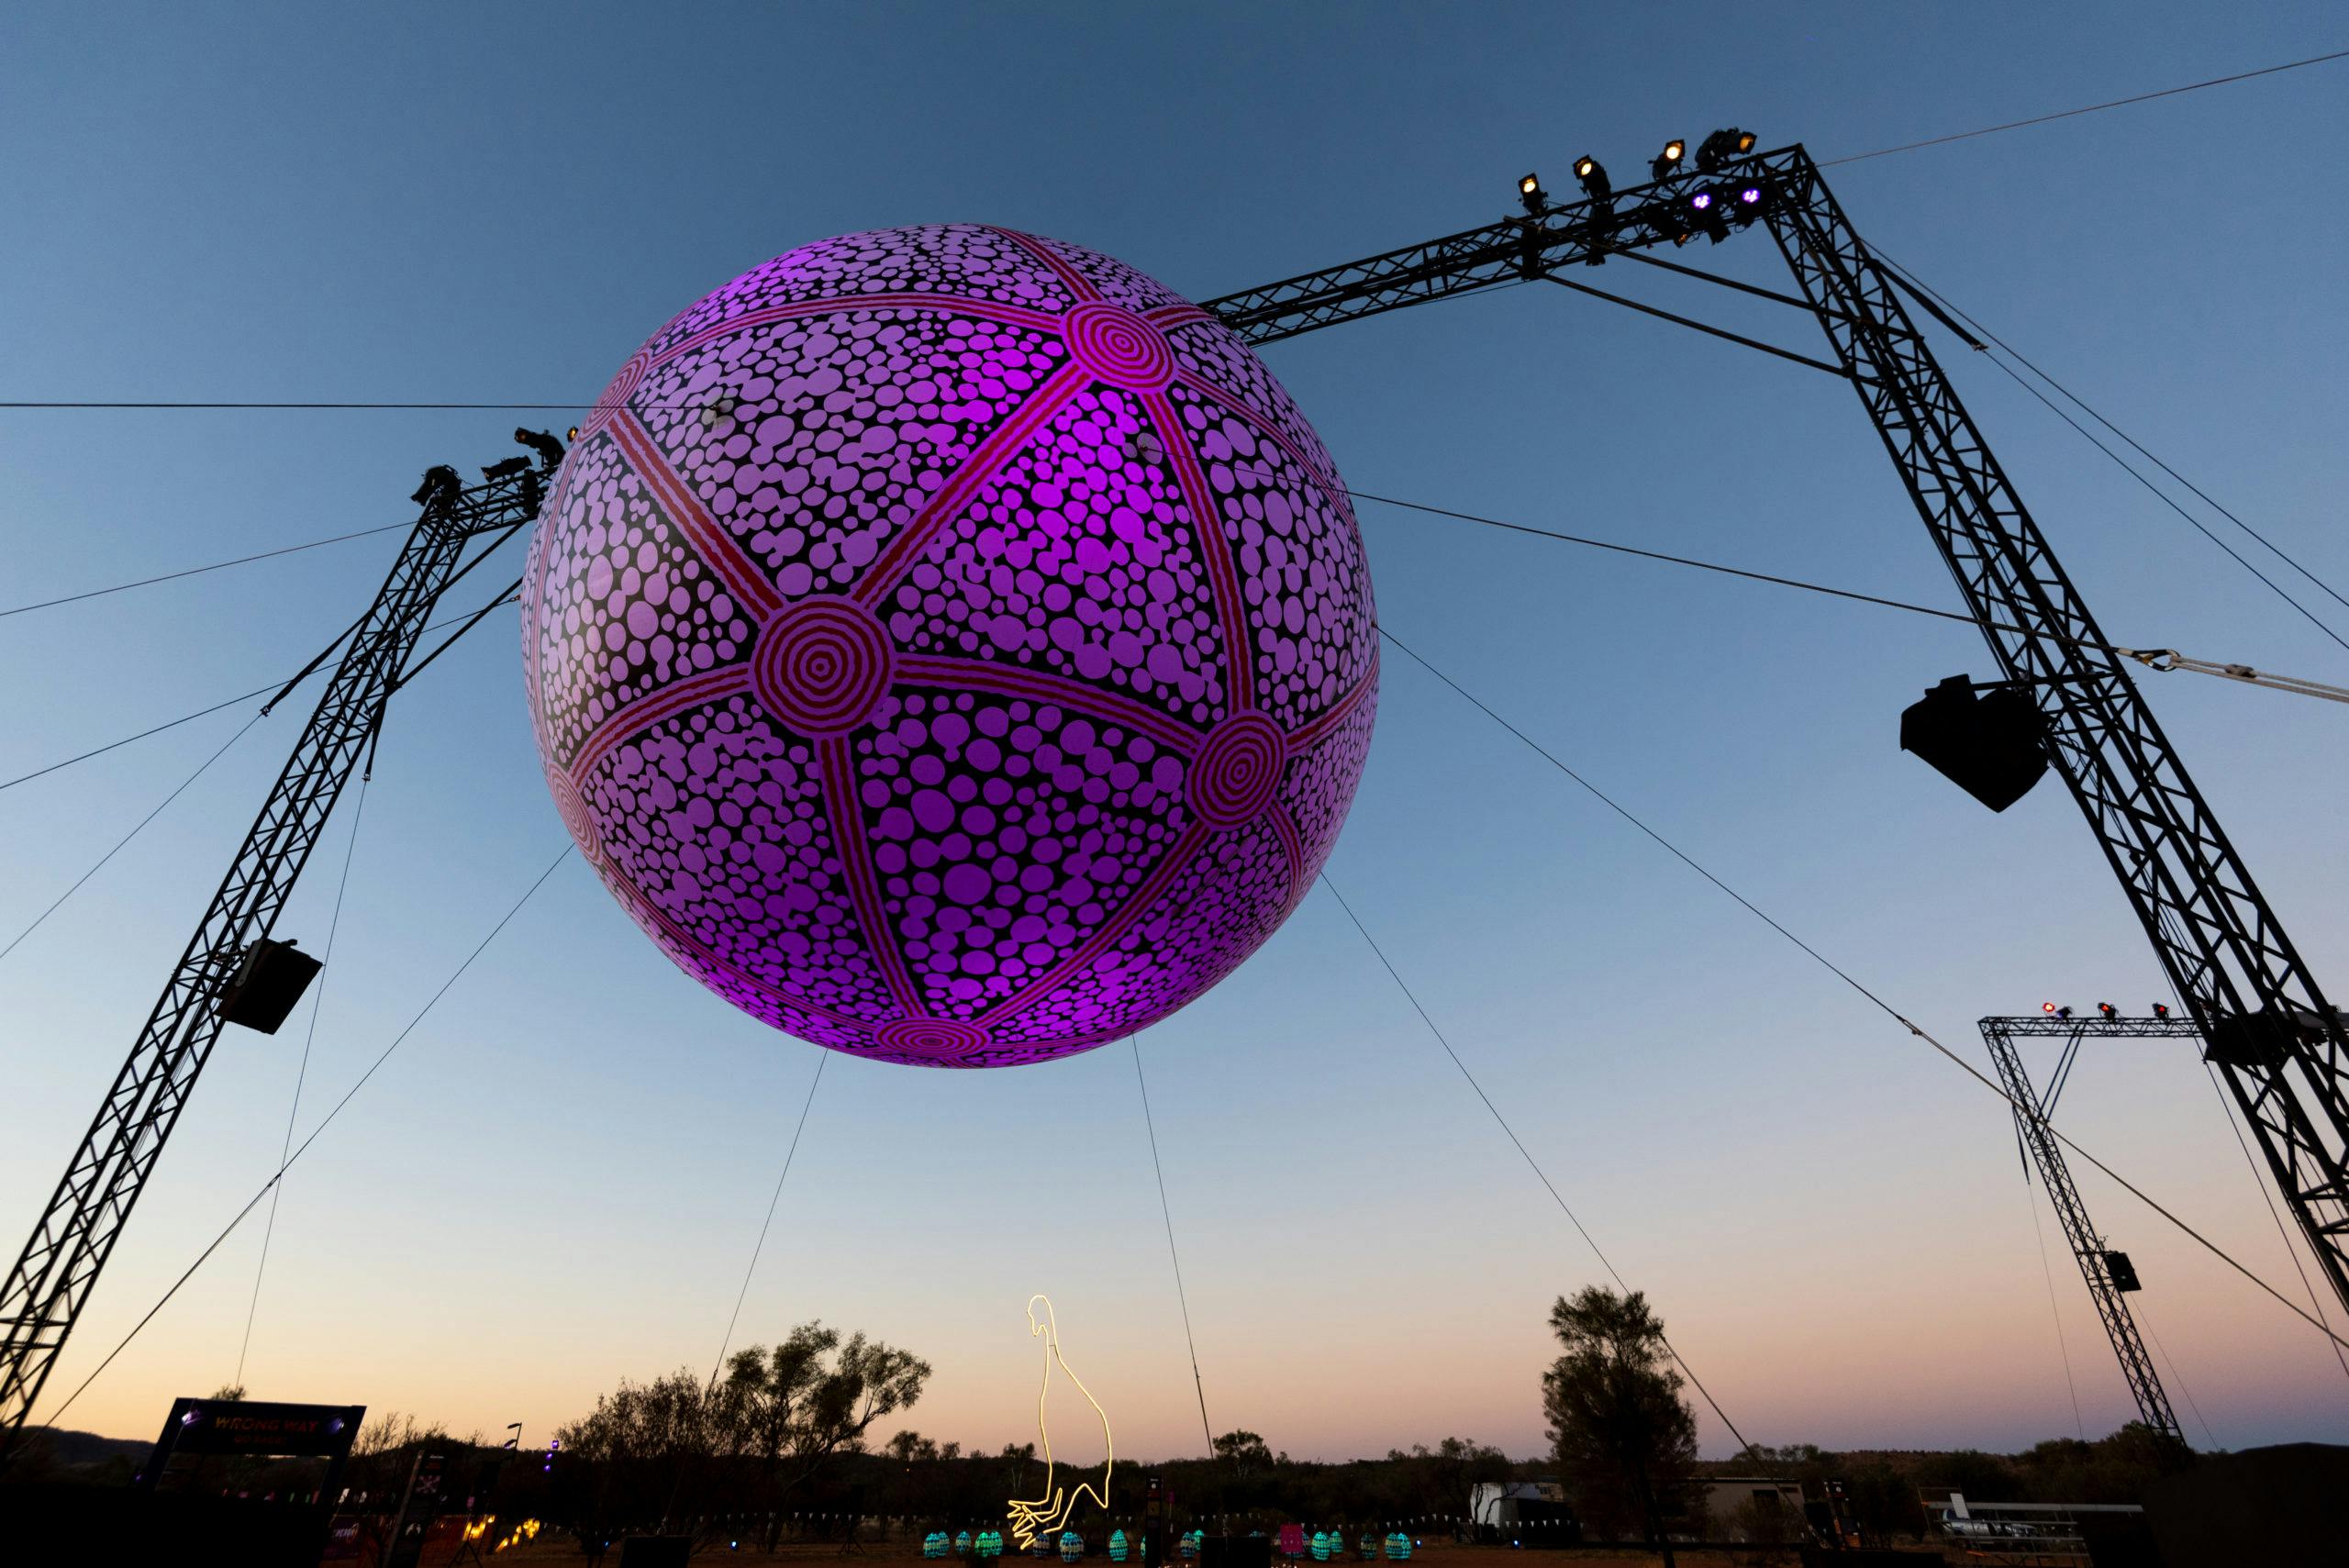 Desert Park Day - Pink ball sculpture